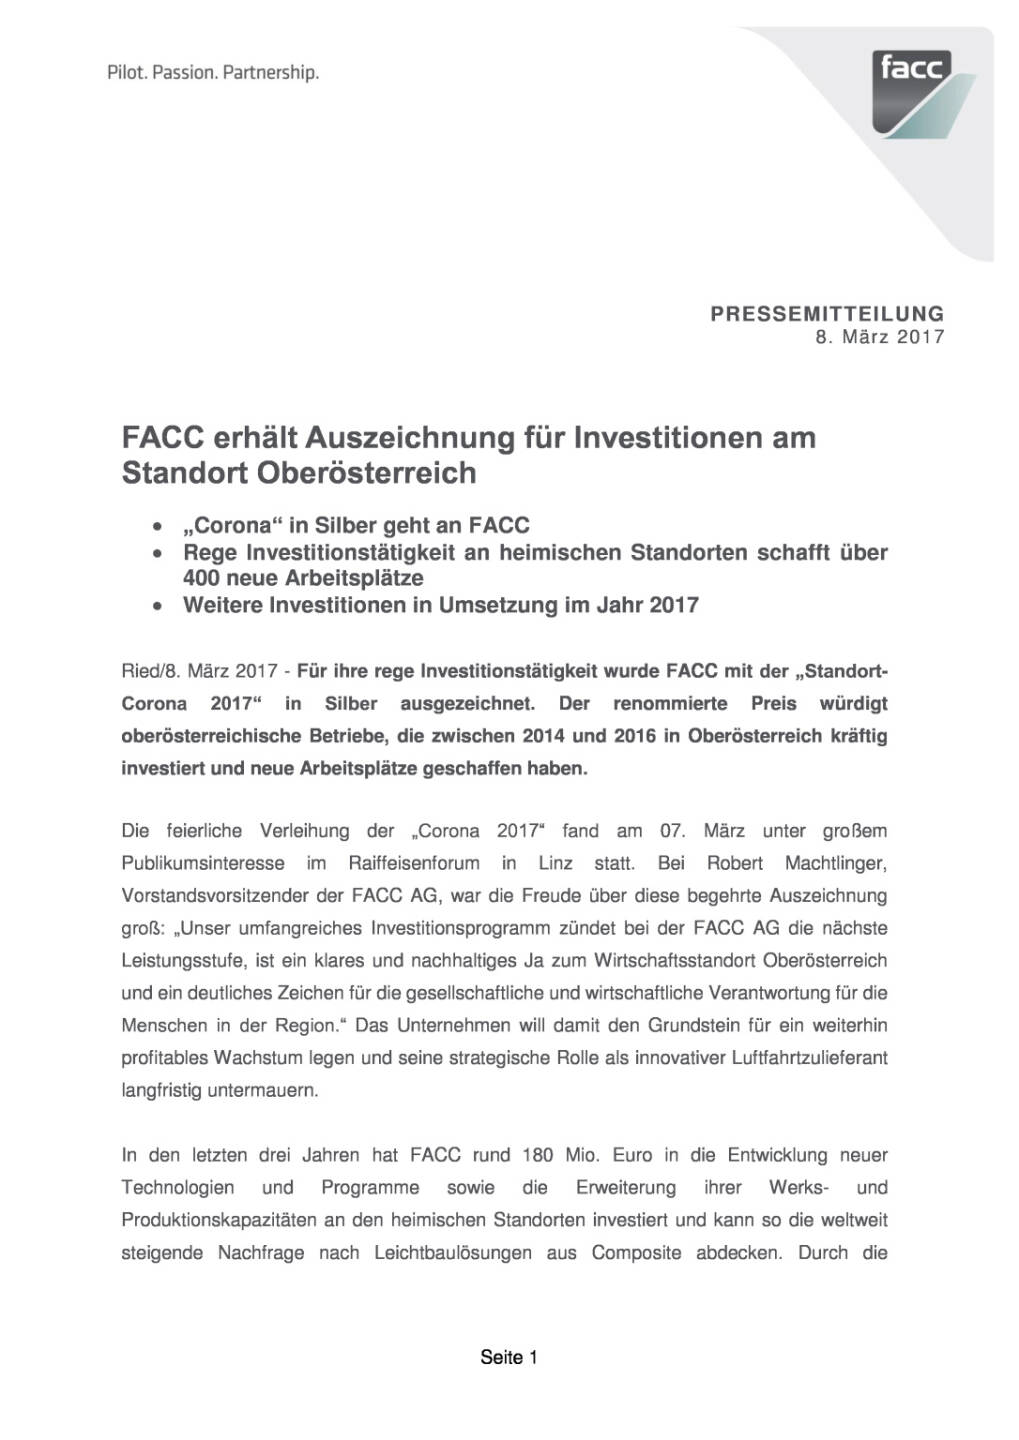 FACC erhält Auszeichnung für Investitionen am Standort Oberösterreich, Seite 1/4, komplettes Dokument unter http://boerse-social.com/static/uploads/file_2149_facc_erhalt_auszeichnung_fur_investitionen_am_standort_oberosterreich.pdf